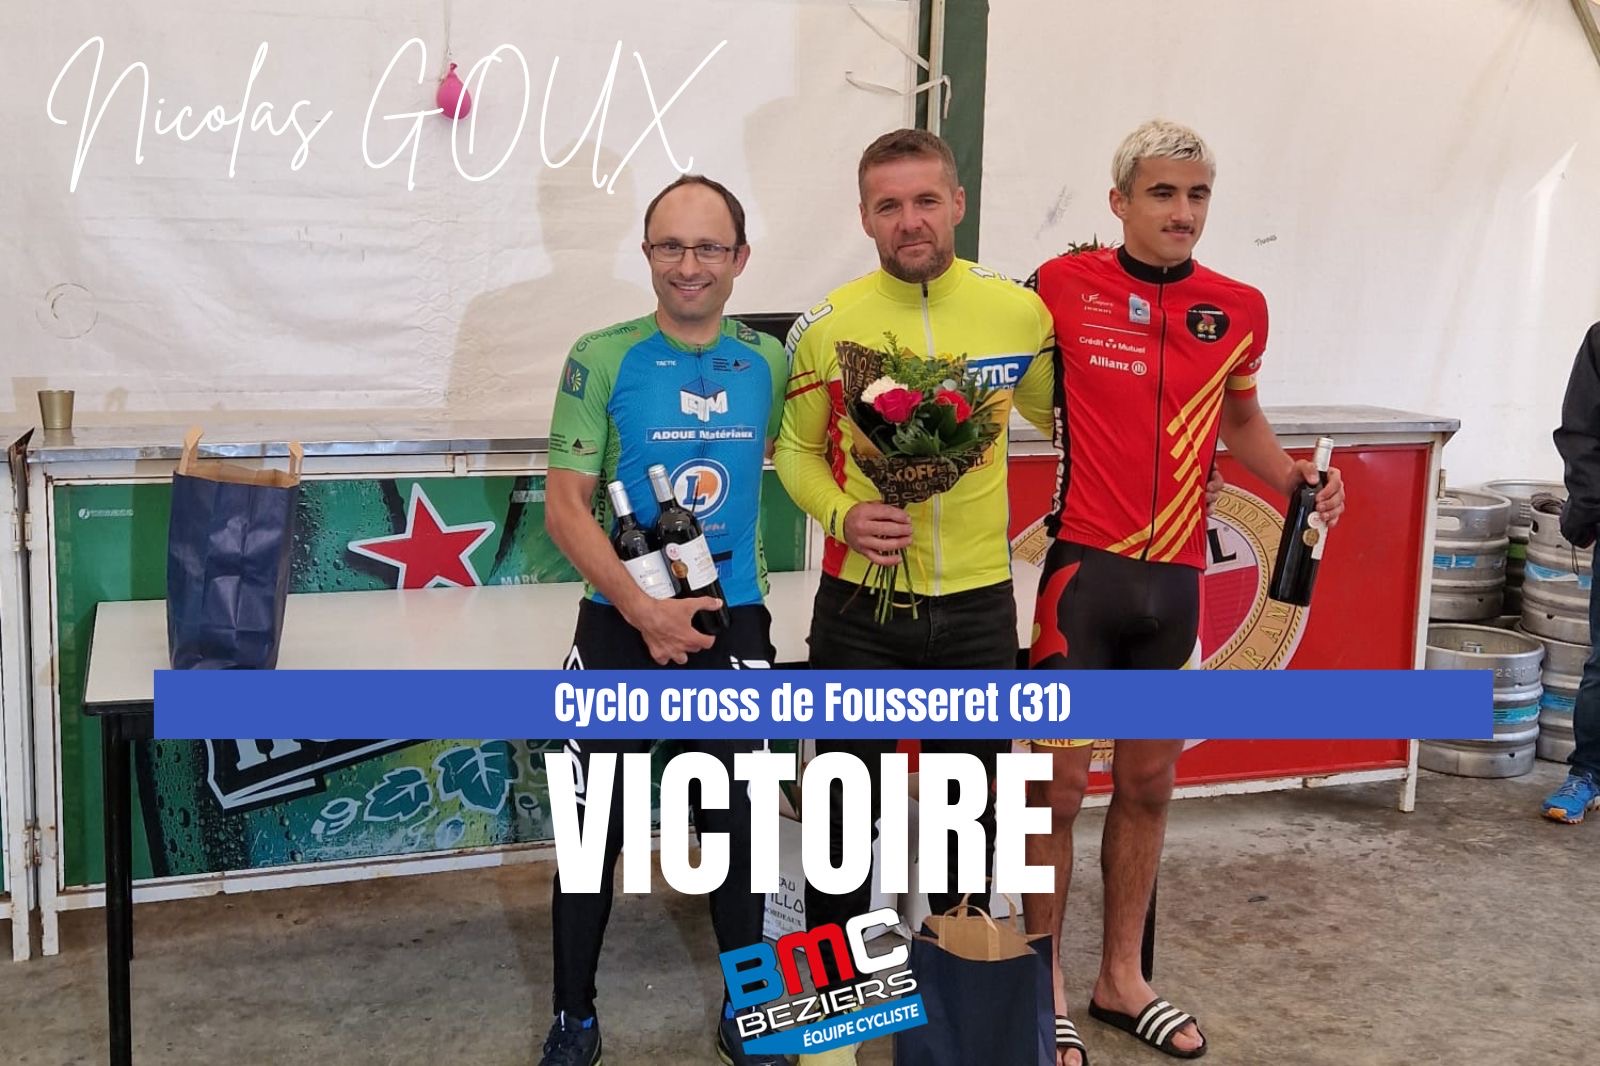 Georges Reverdy et Nicolas Goux brillent en Cyclo-Cross !